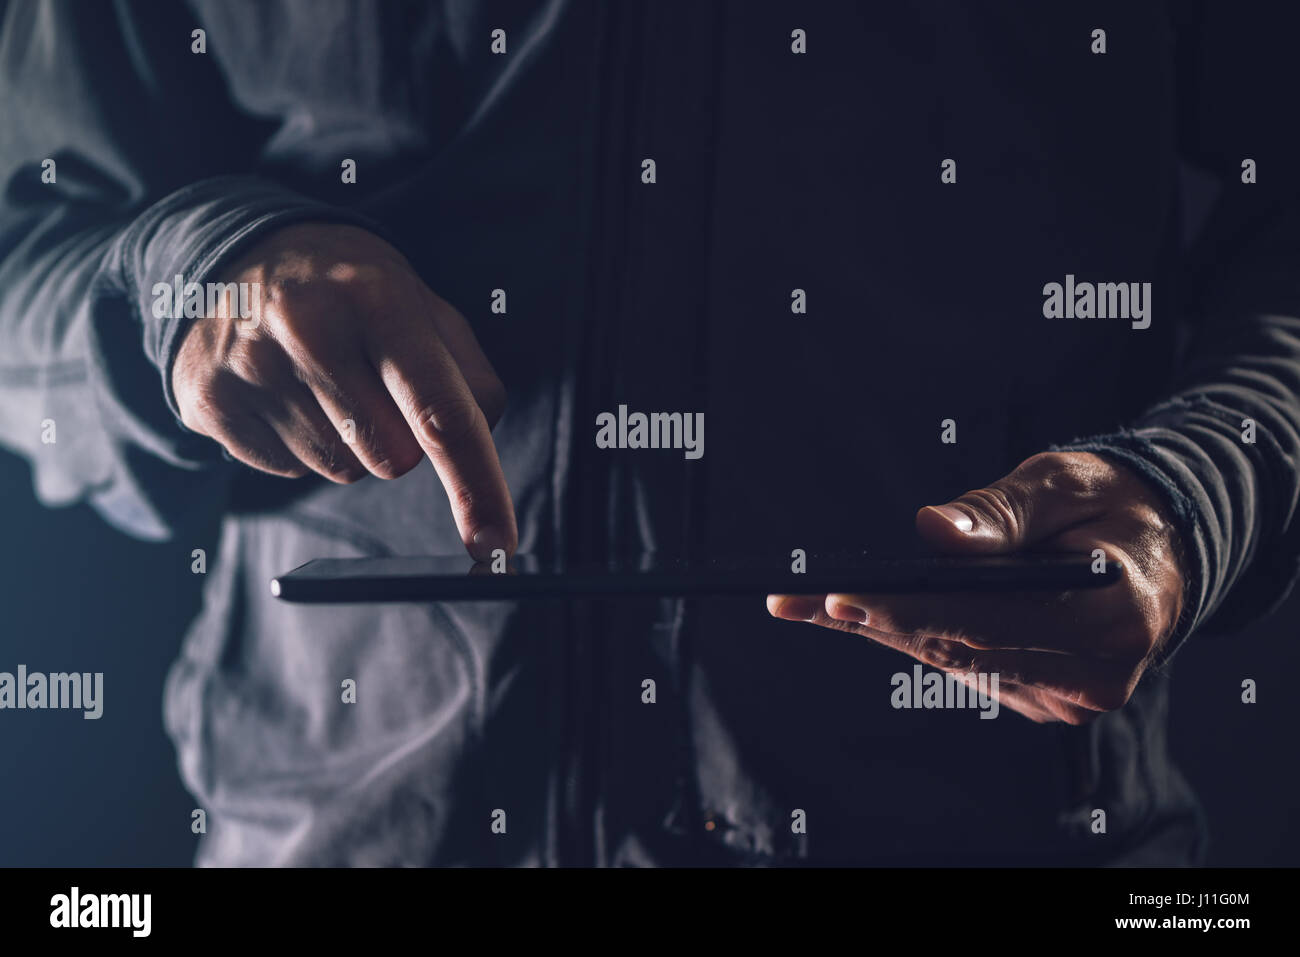 Digitalen Tablet-Computer in männlichen Händen im dunklen Raum, unaufdringlich hautnah Stockfoto